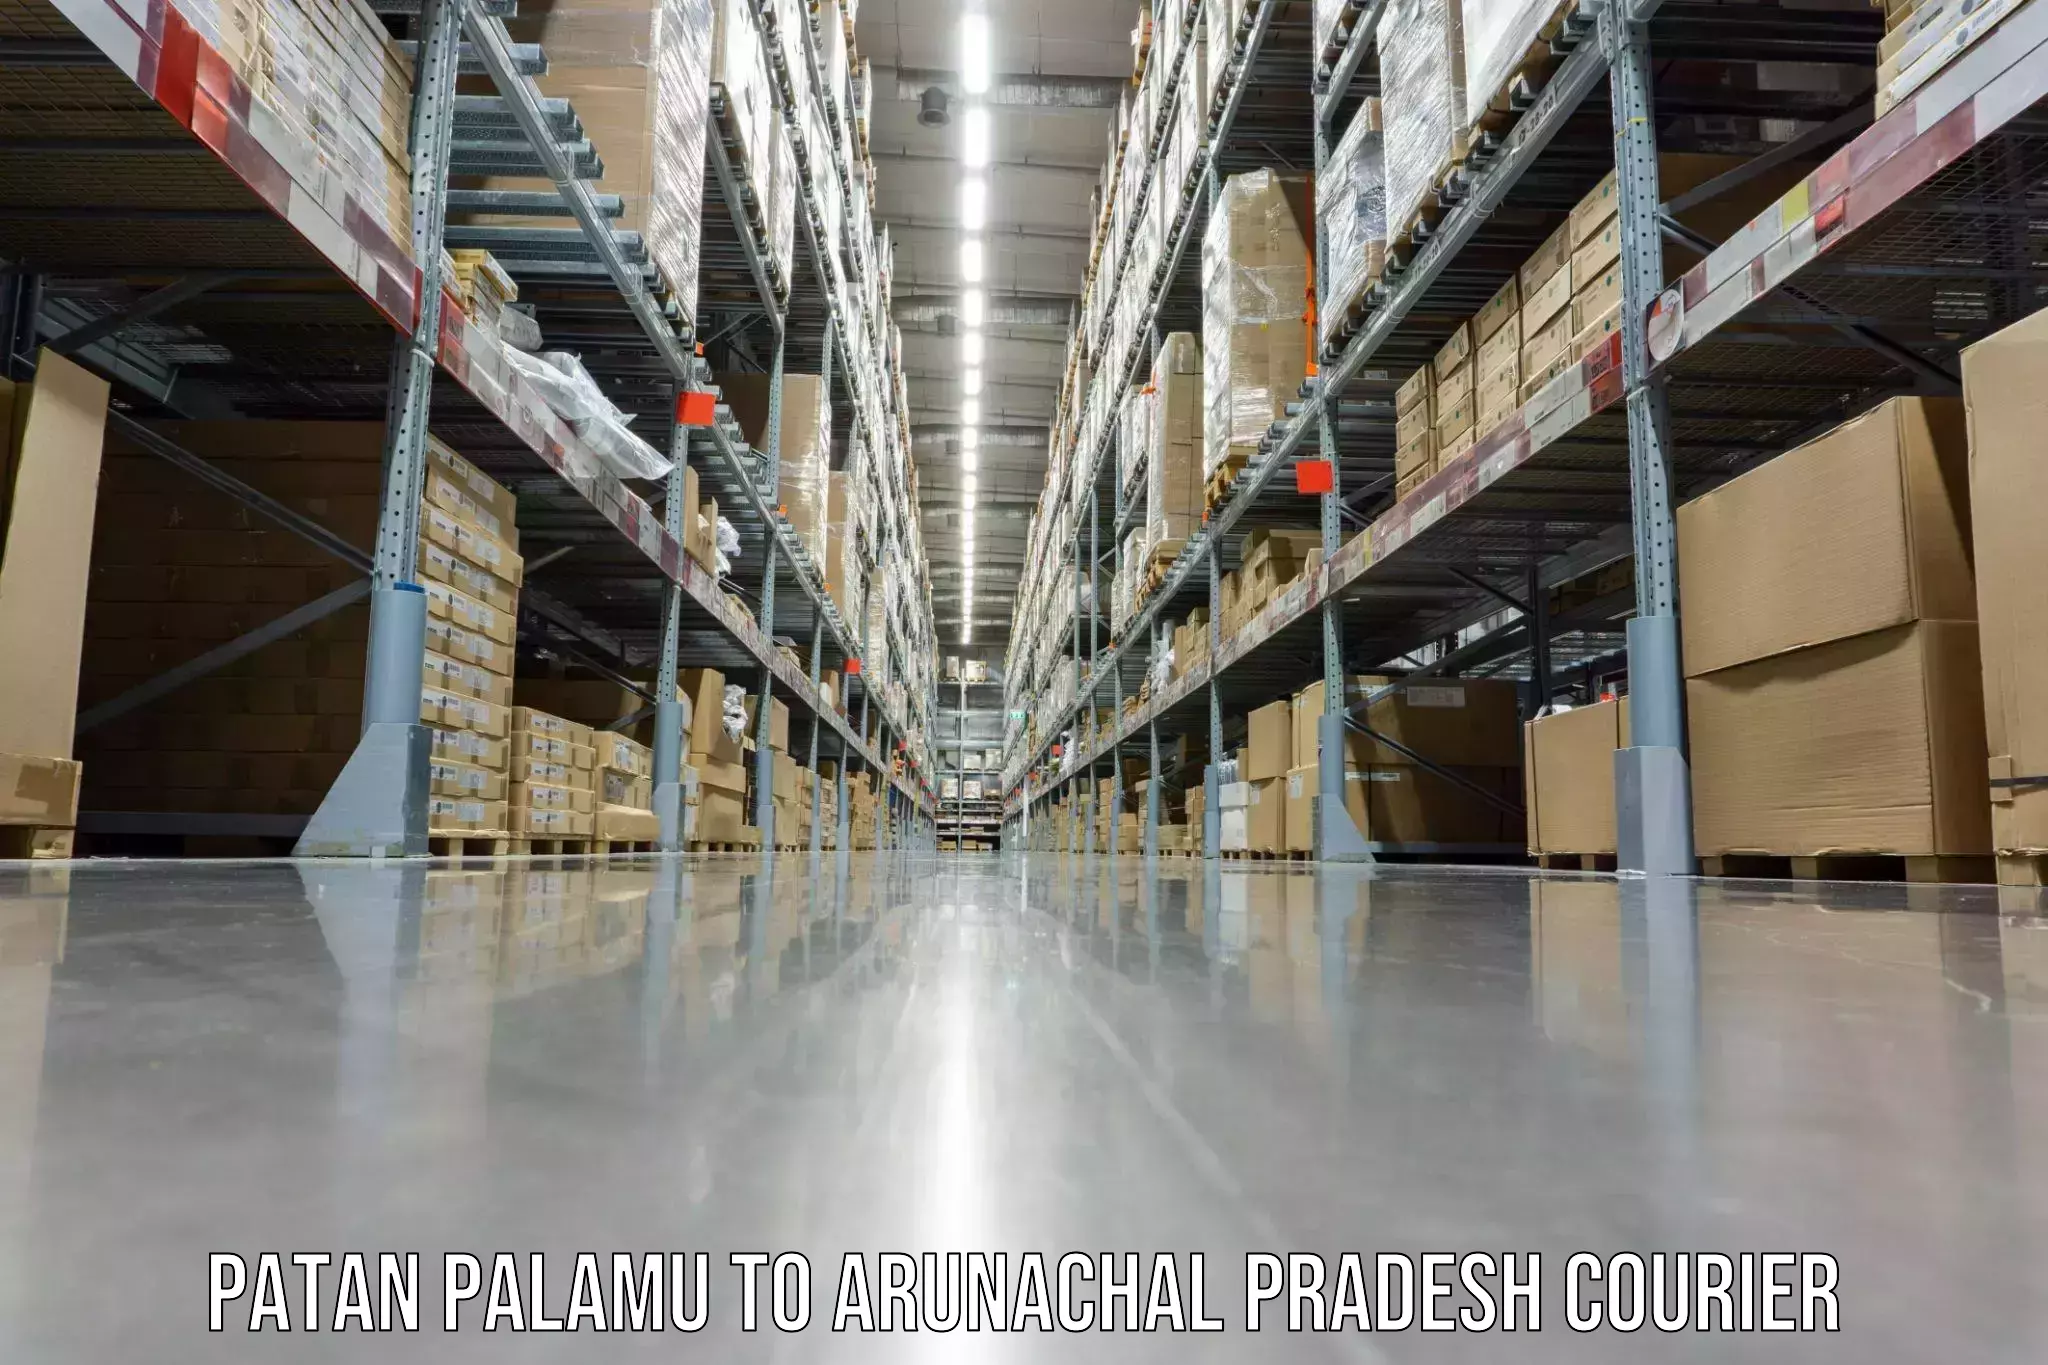 Furniture transport company Patan Palamu to Boleng